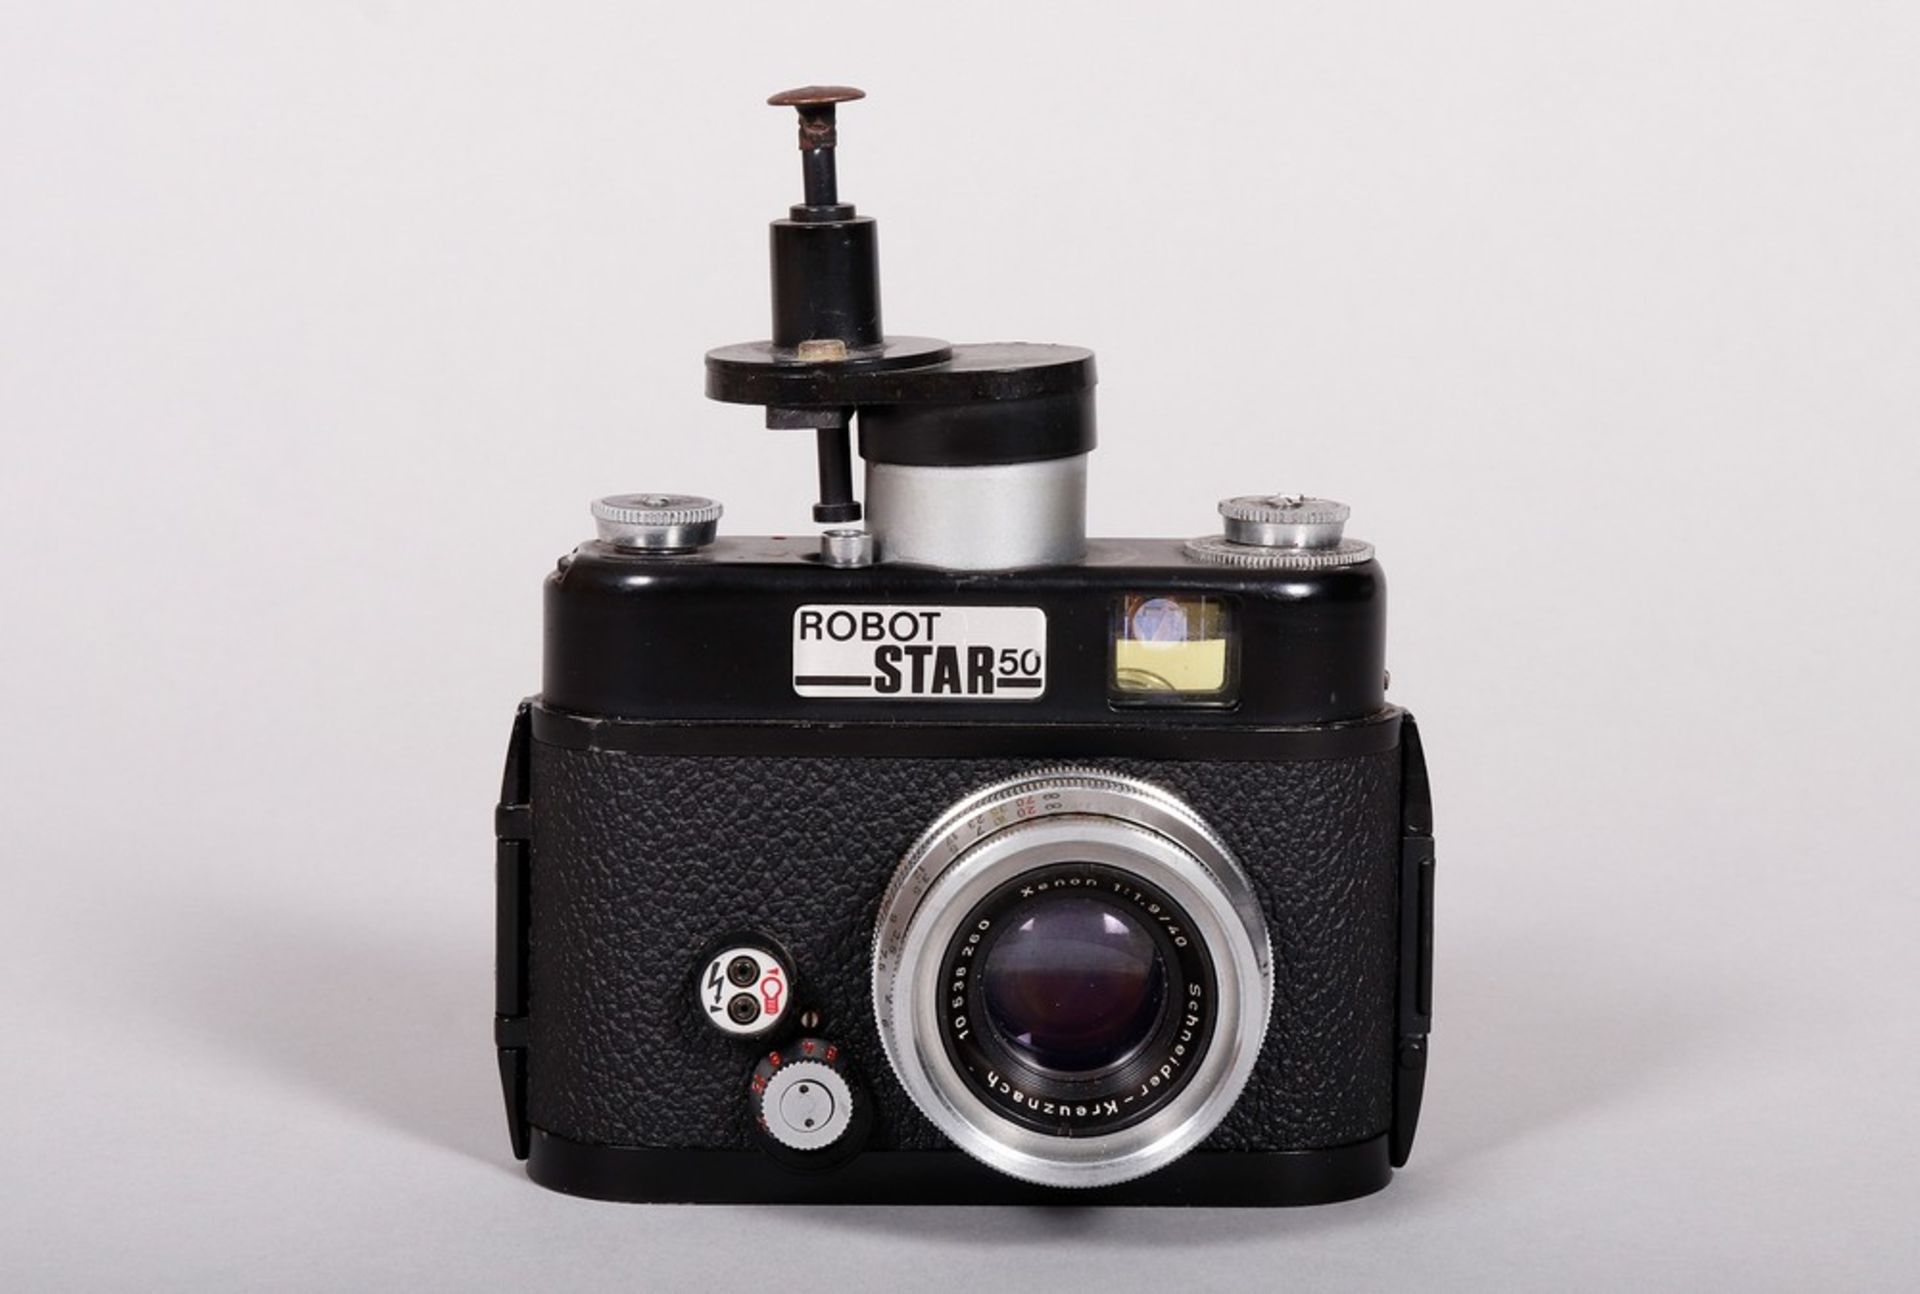 35mm camera, Otto Berning & Co., Düsseldorf, probably 1960s